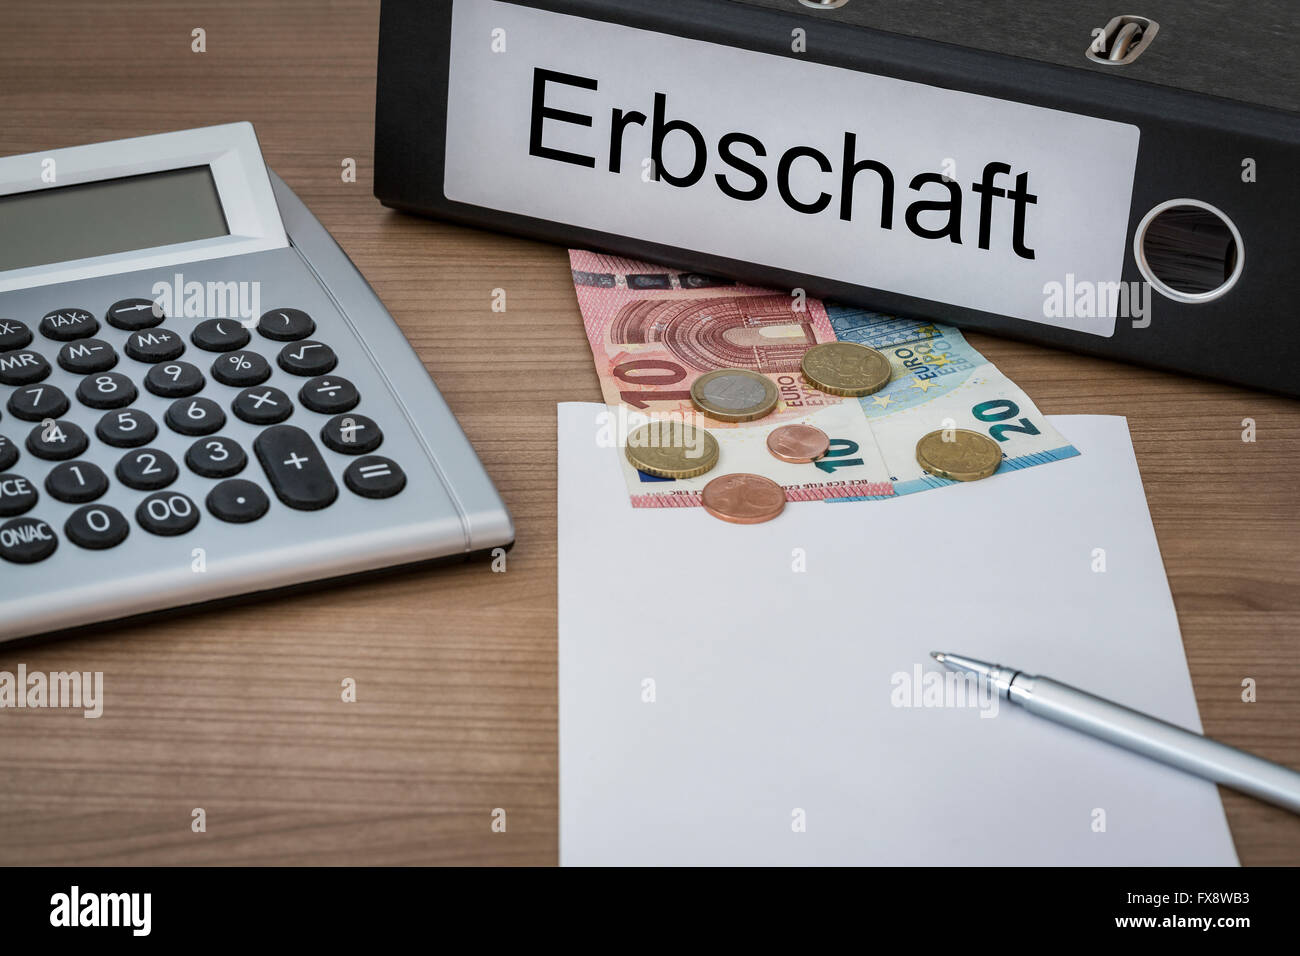 Erbschaft (German inheritance) written on a binder on a desk with euro money calculator blank sheet and pen Stock Photo